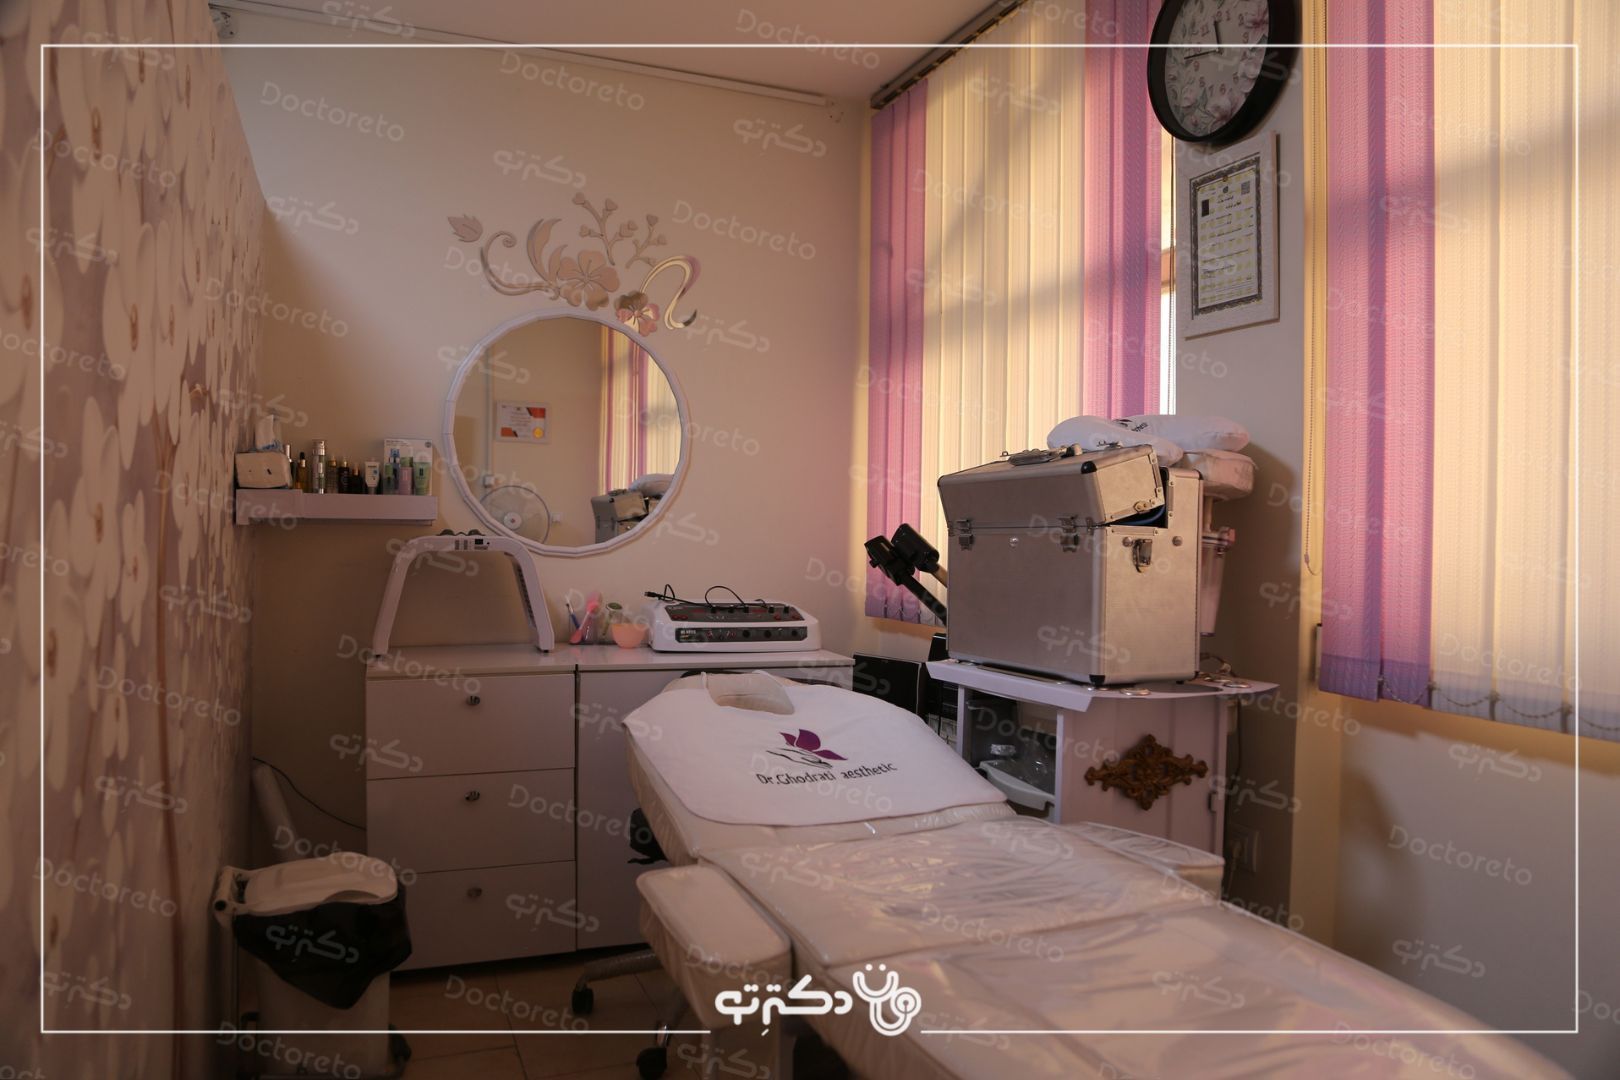 مزوتراپی ابرو با برند ام سی کازمتیک یا فیوژن(1جلسه) دکتر فاطمه قدرتی در شیراز 3